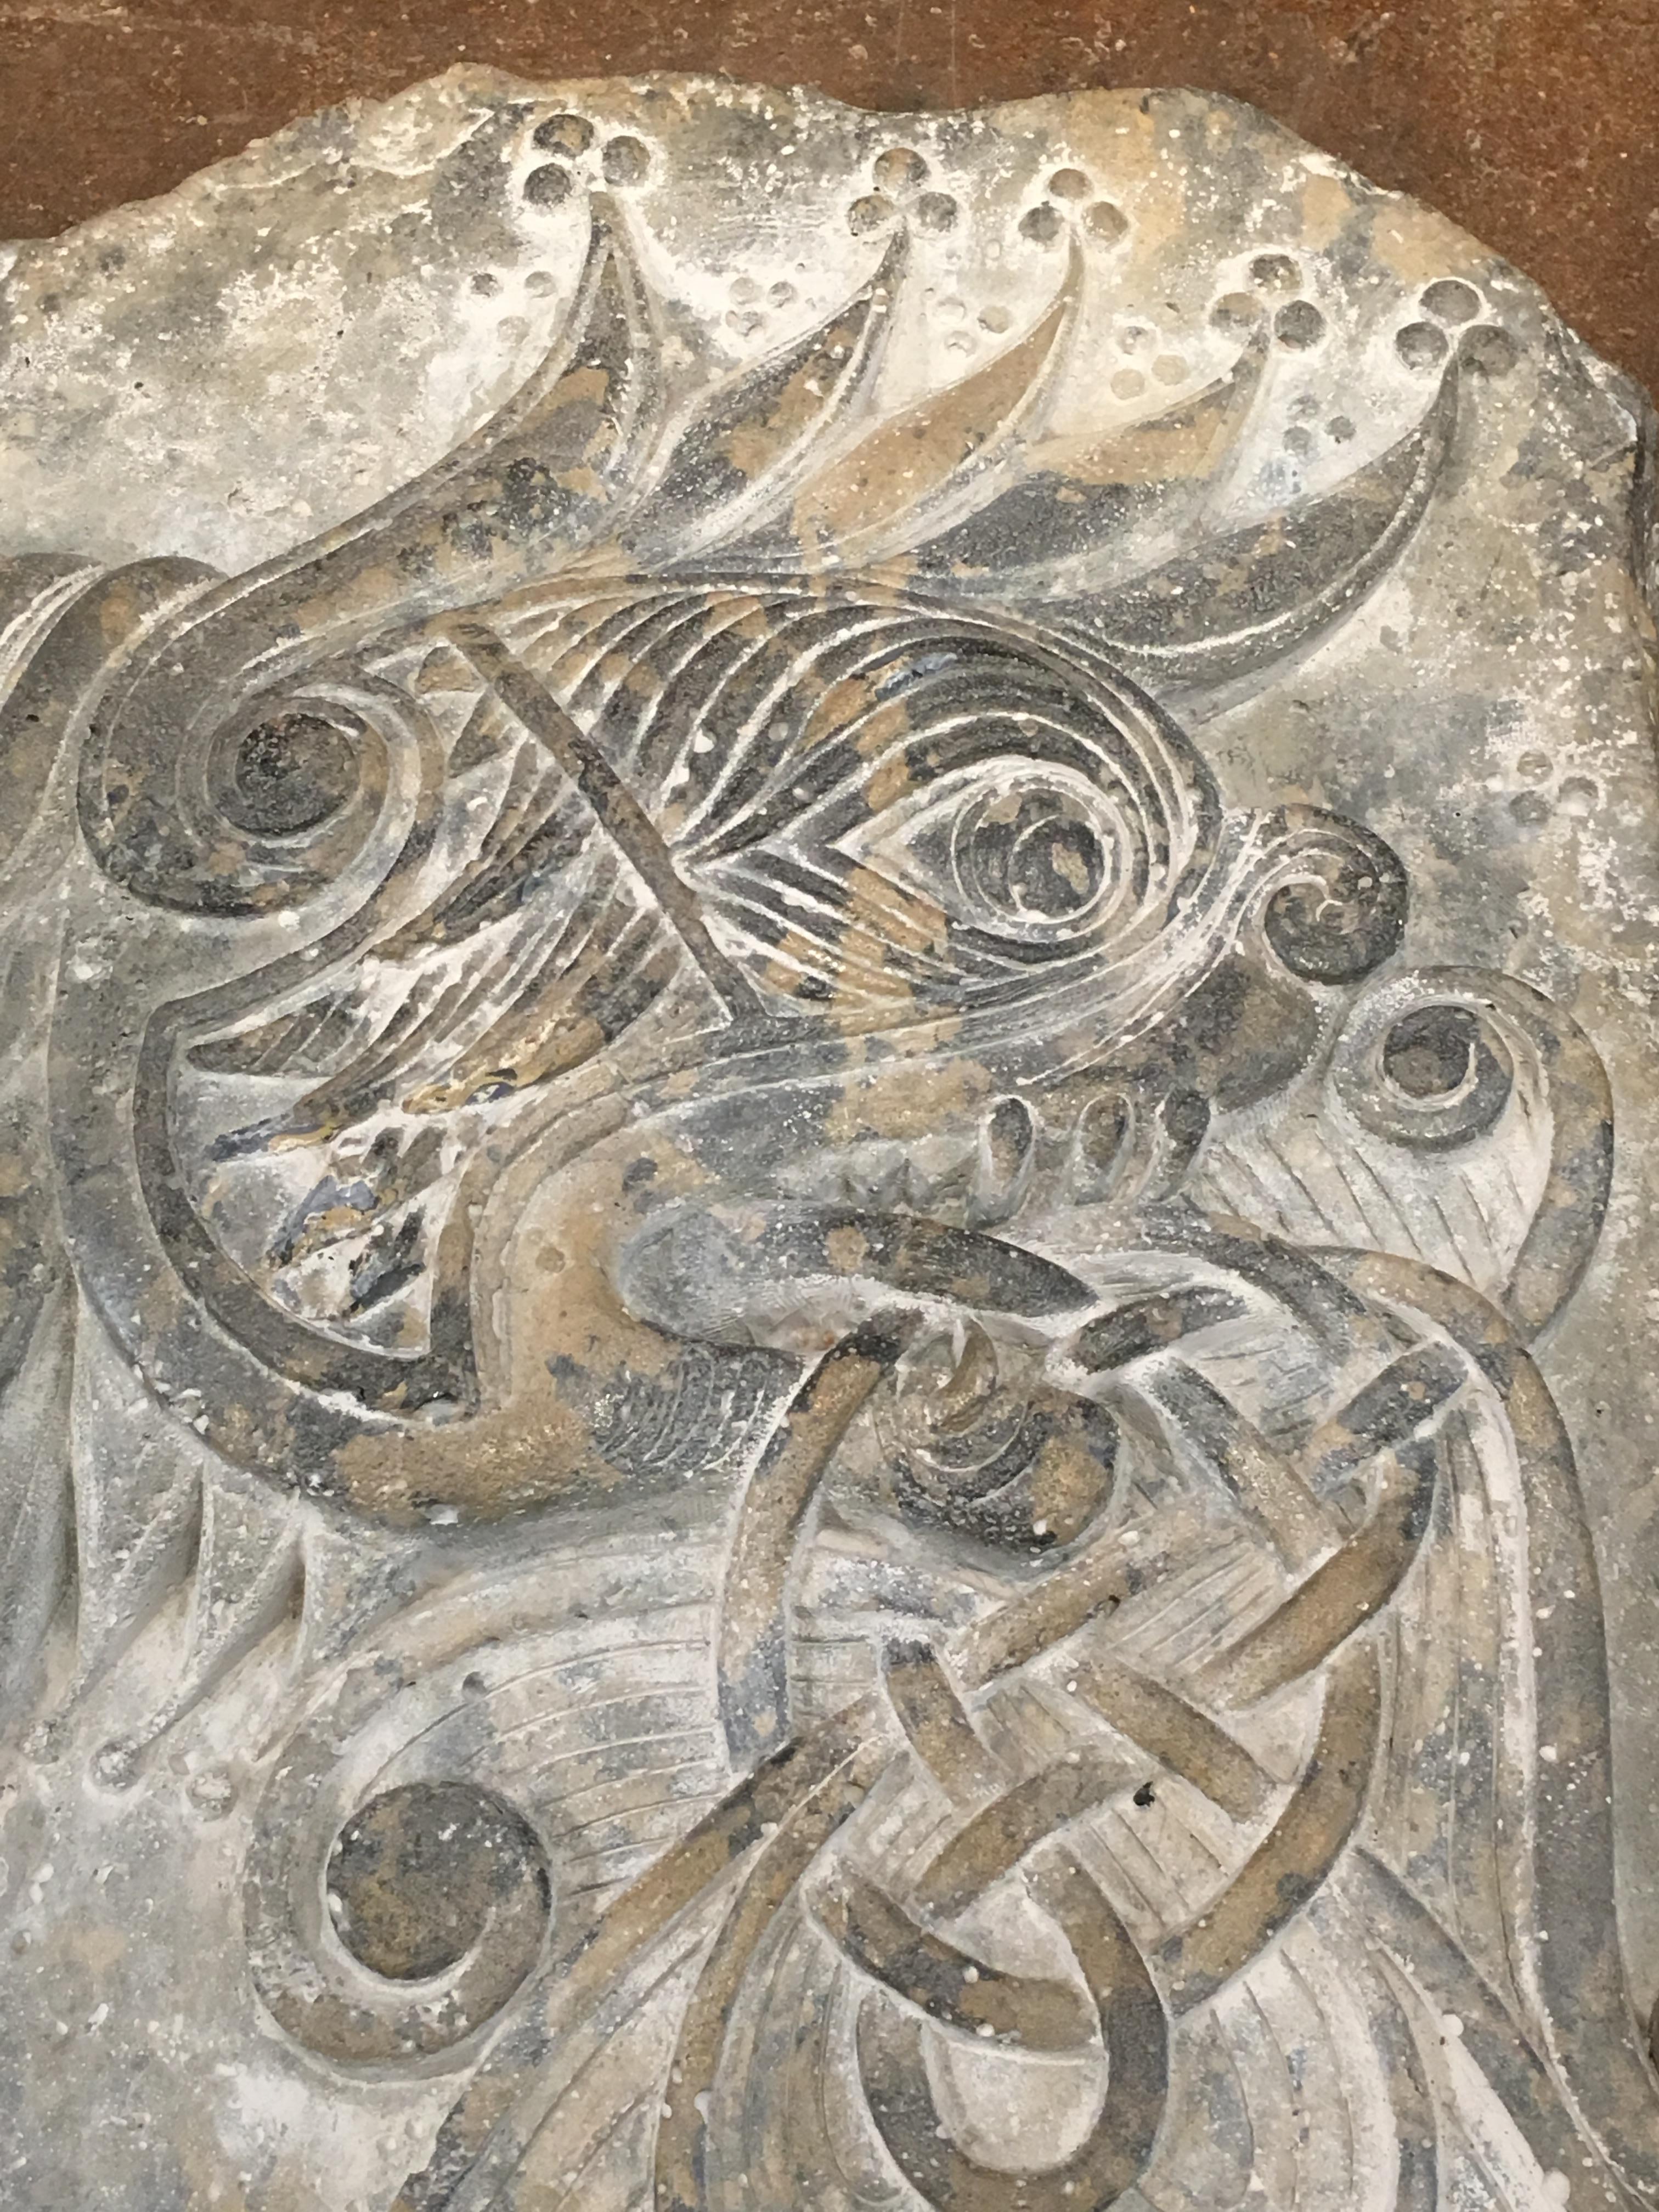 Eine wunderbare Wandtafel aus gegossener Keramik, die ein keltisches Fabelwesen darstellt, von Jim Meredith Studios, Ende des 20. Jahrhunderts.

Die Plakette, die antiken Steinmetzarbeiten nachempfunden ist, zeigt die wilde Darstellung eines